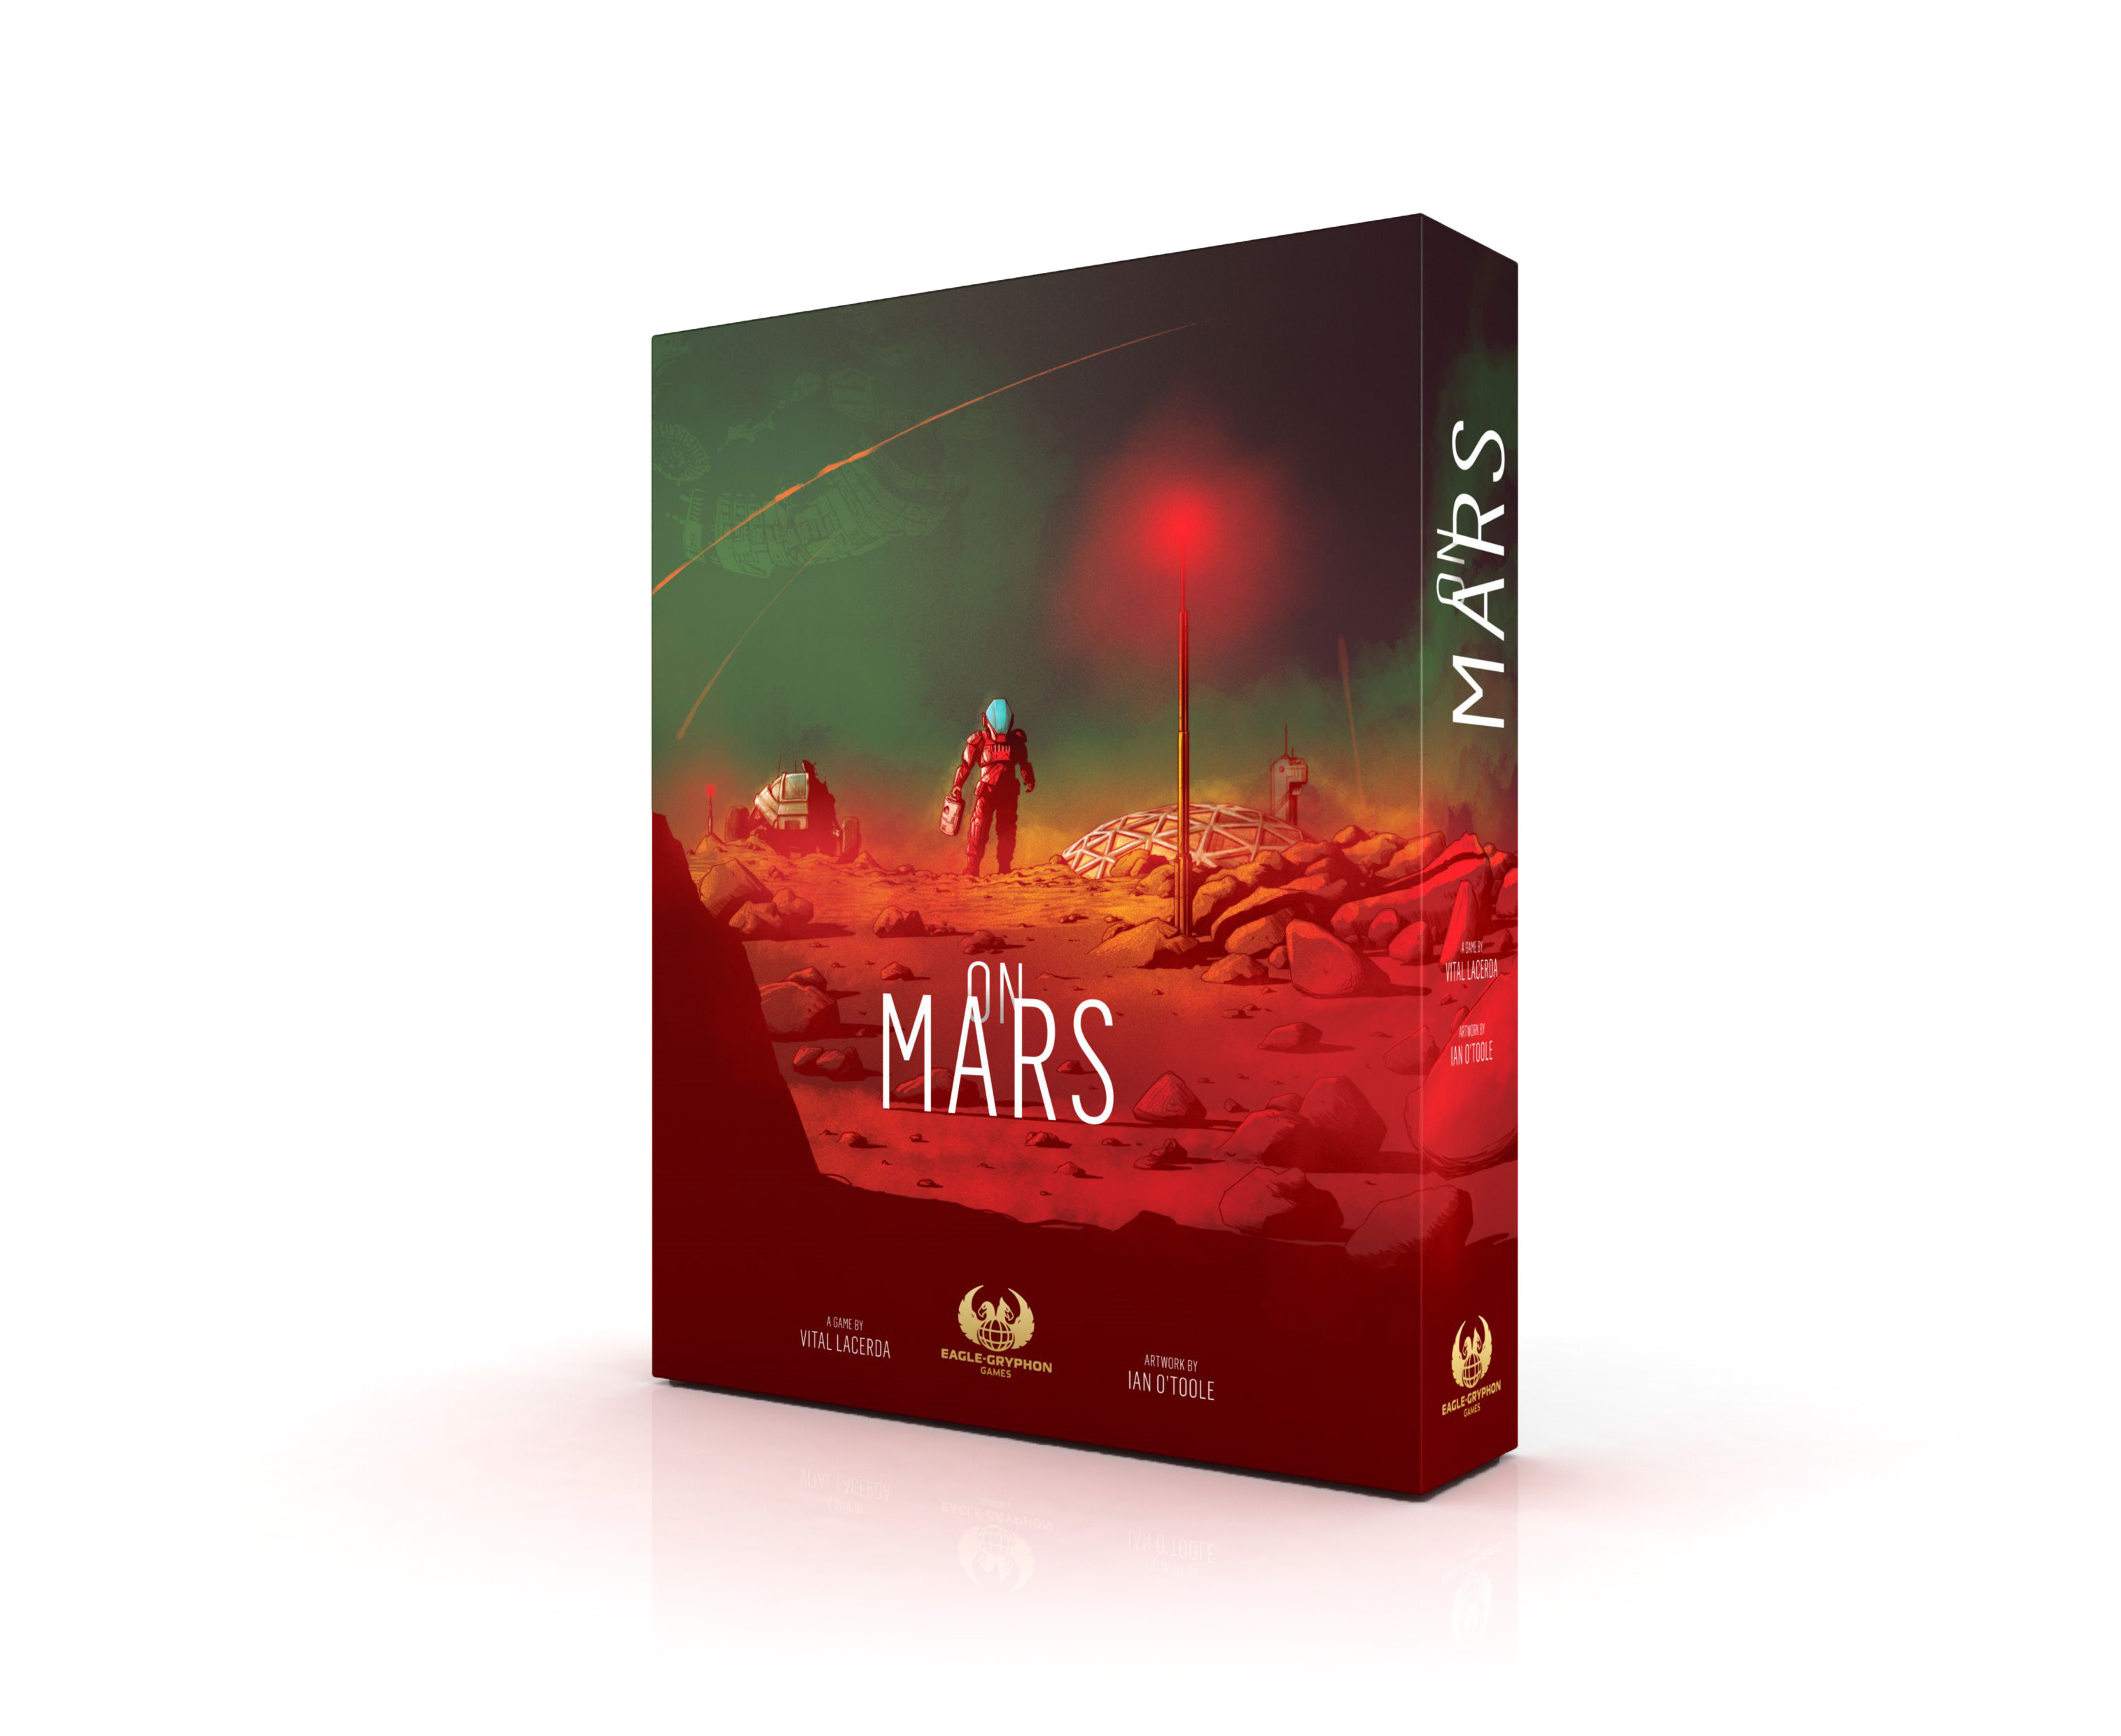 On Mars česky - předprodej spuštěn